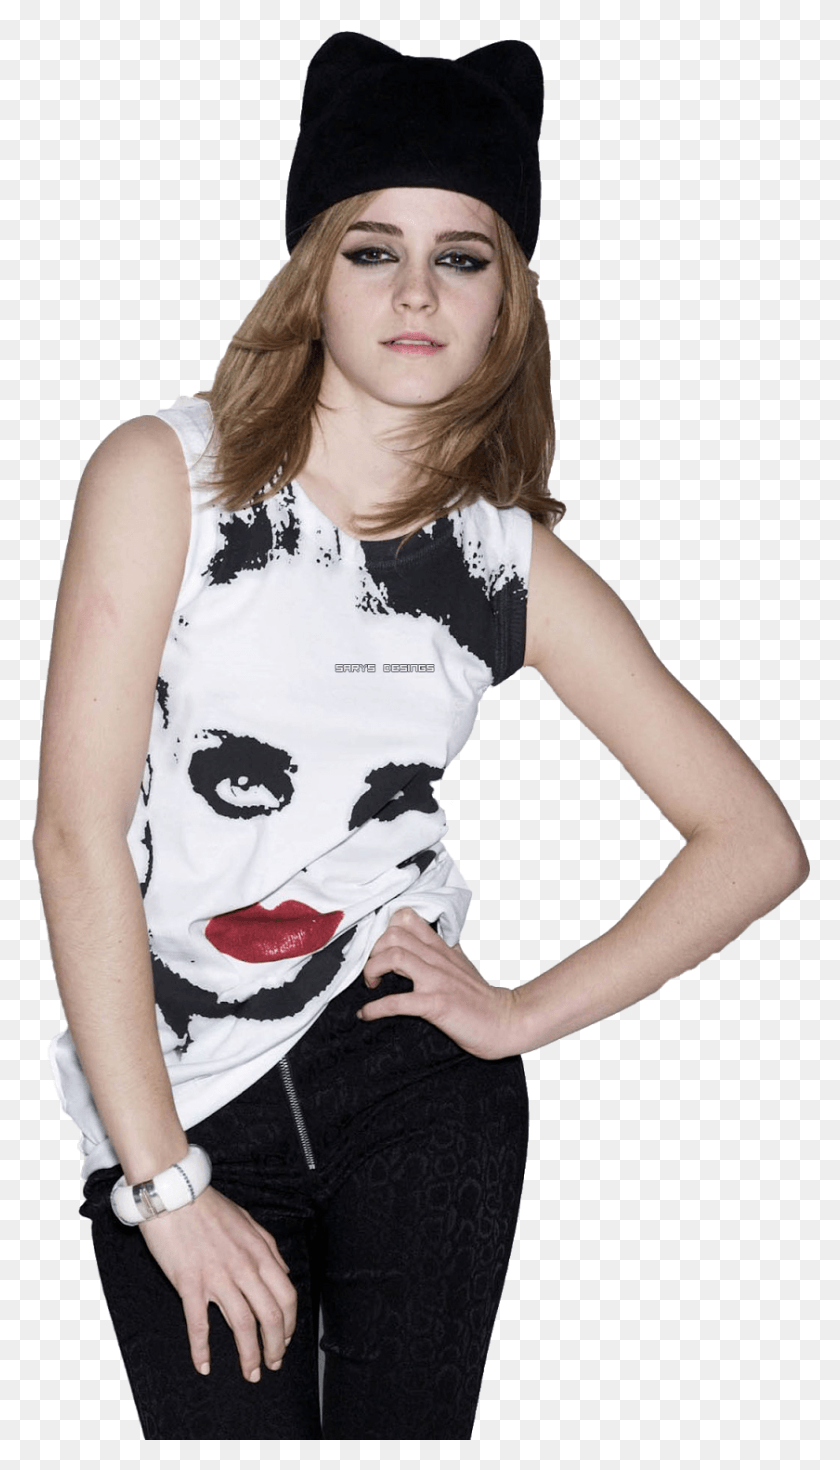 840x1519 Luke Hemmings Emma Watson En Camisa, Ropa, Vestimenta, Persona Hd Png